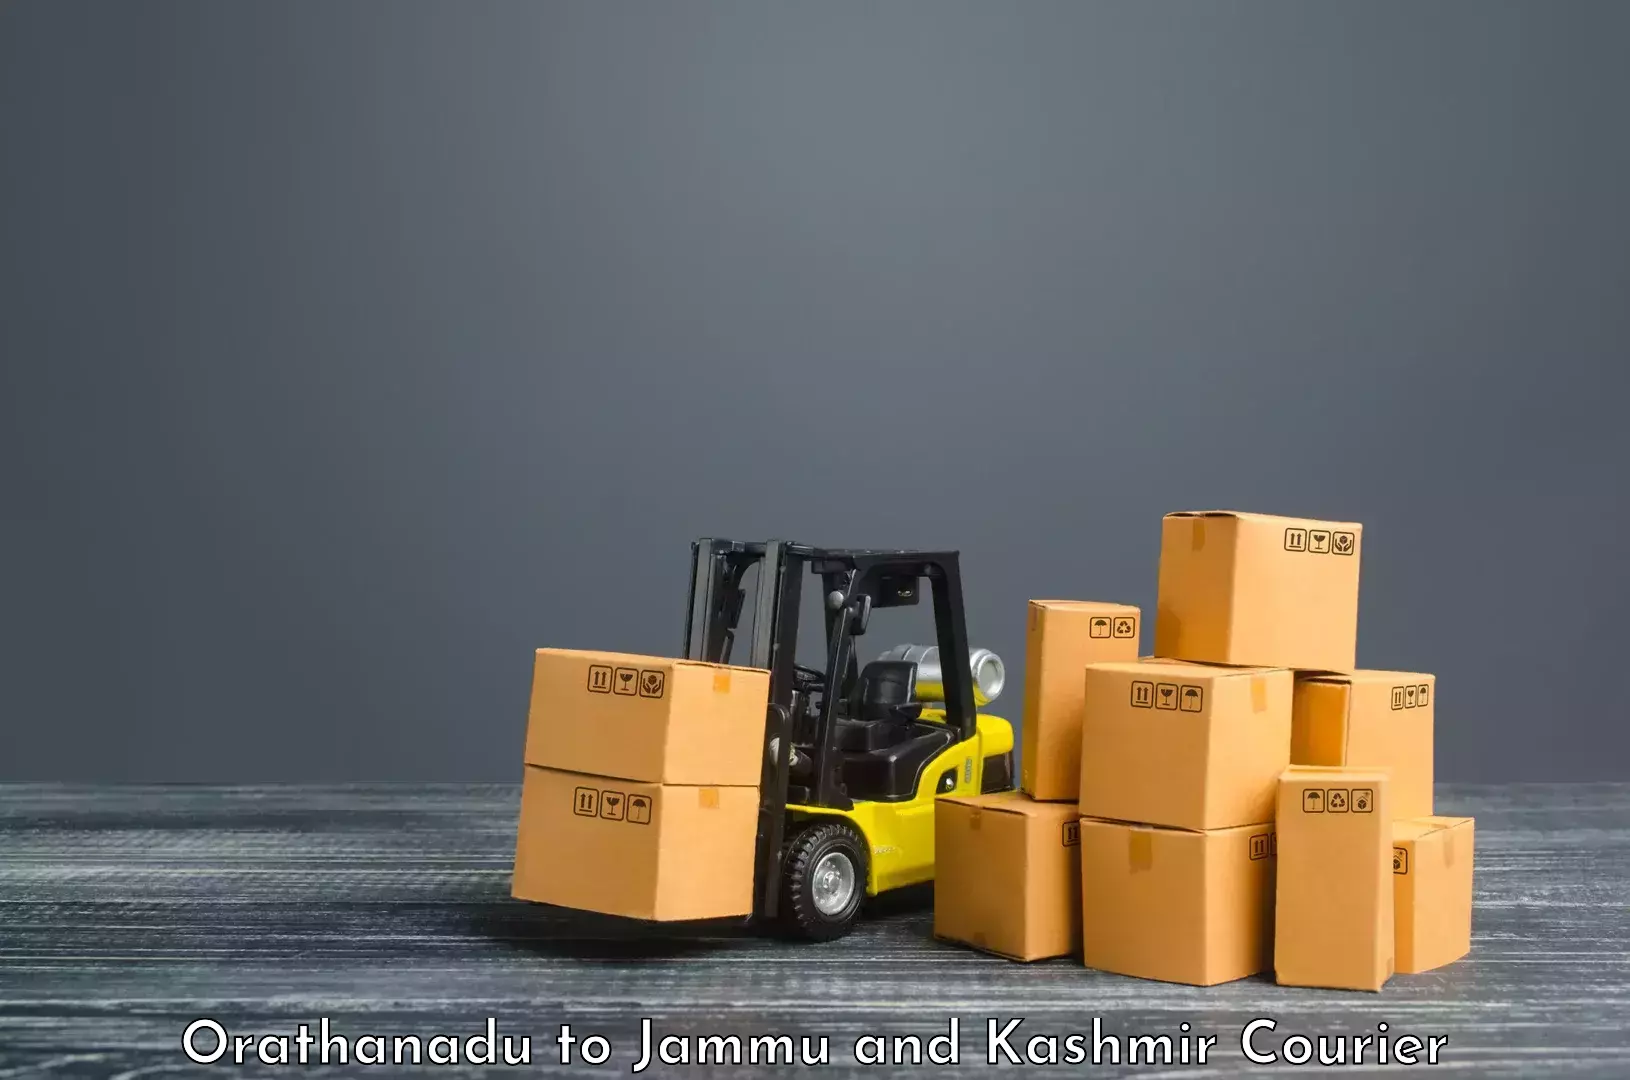 Cargo courier service Orathanadu to Jakh